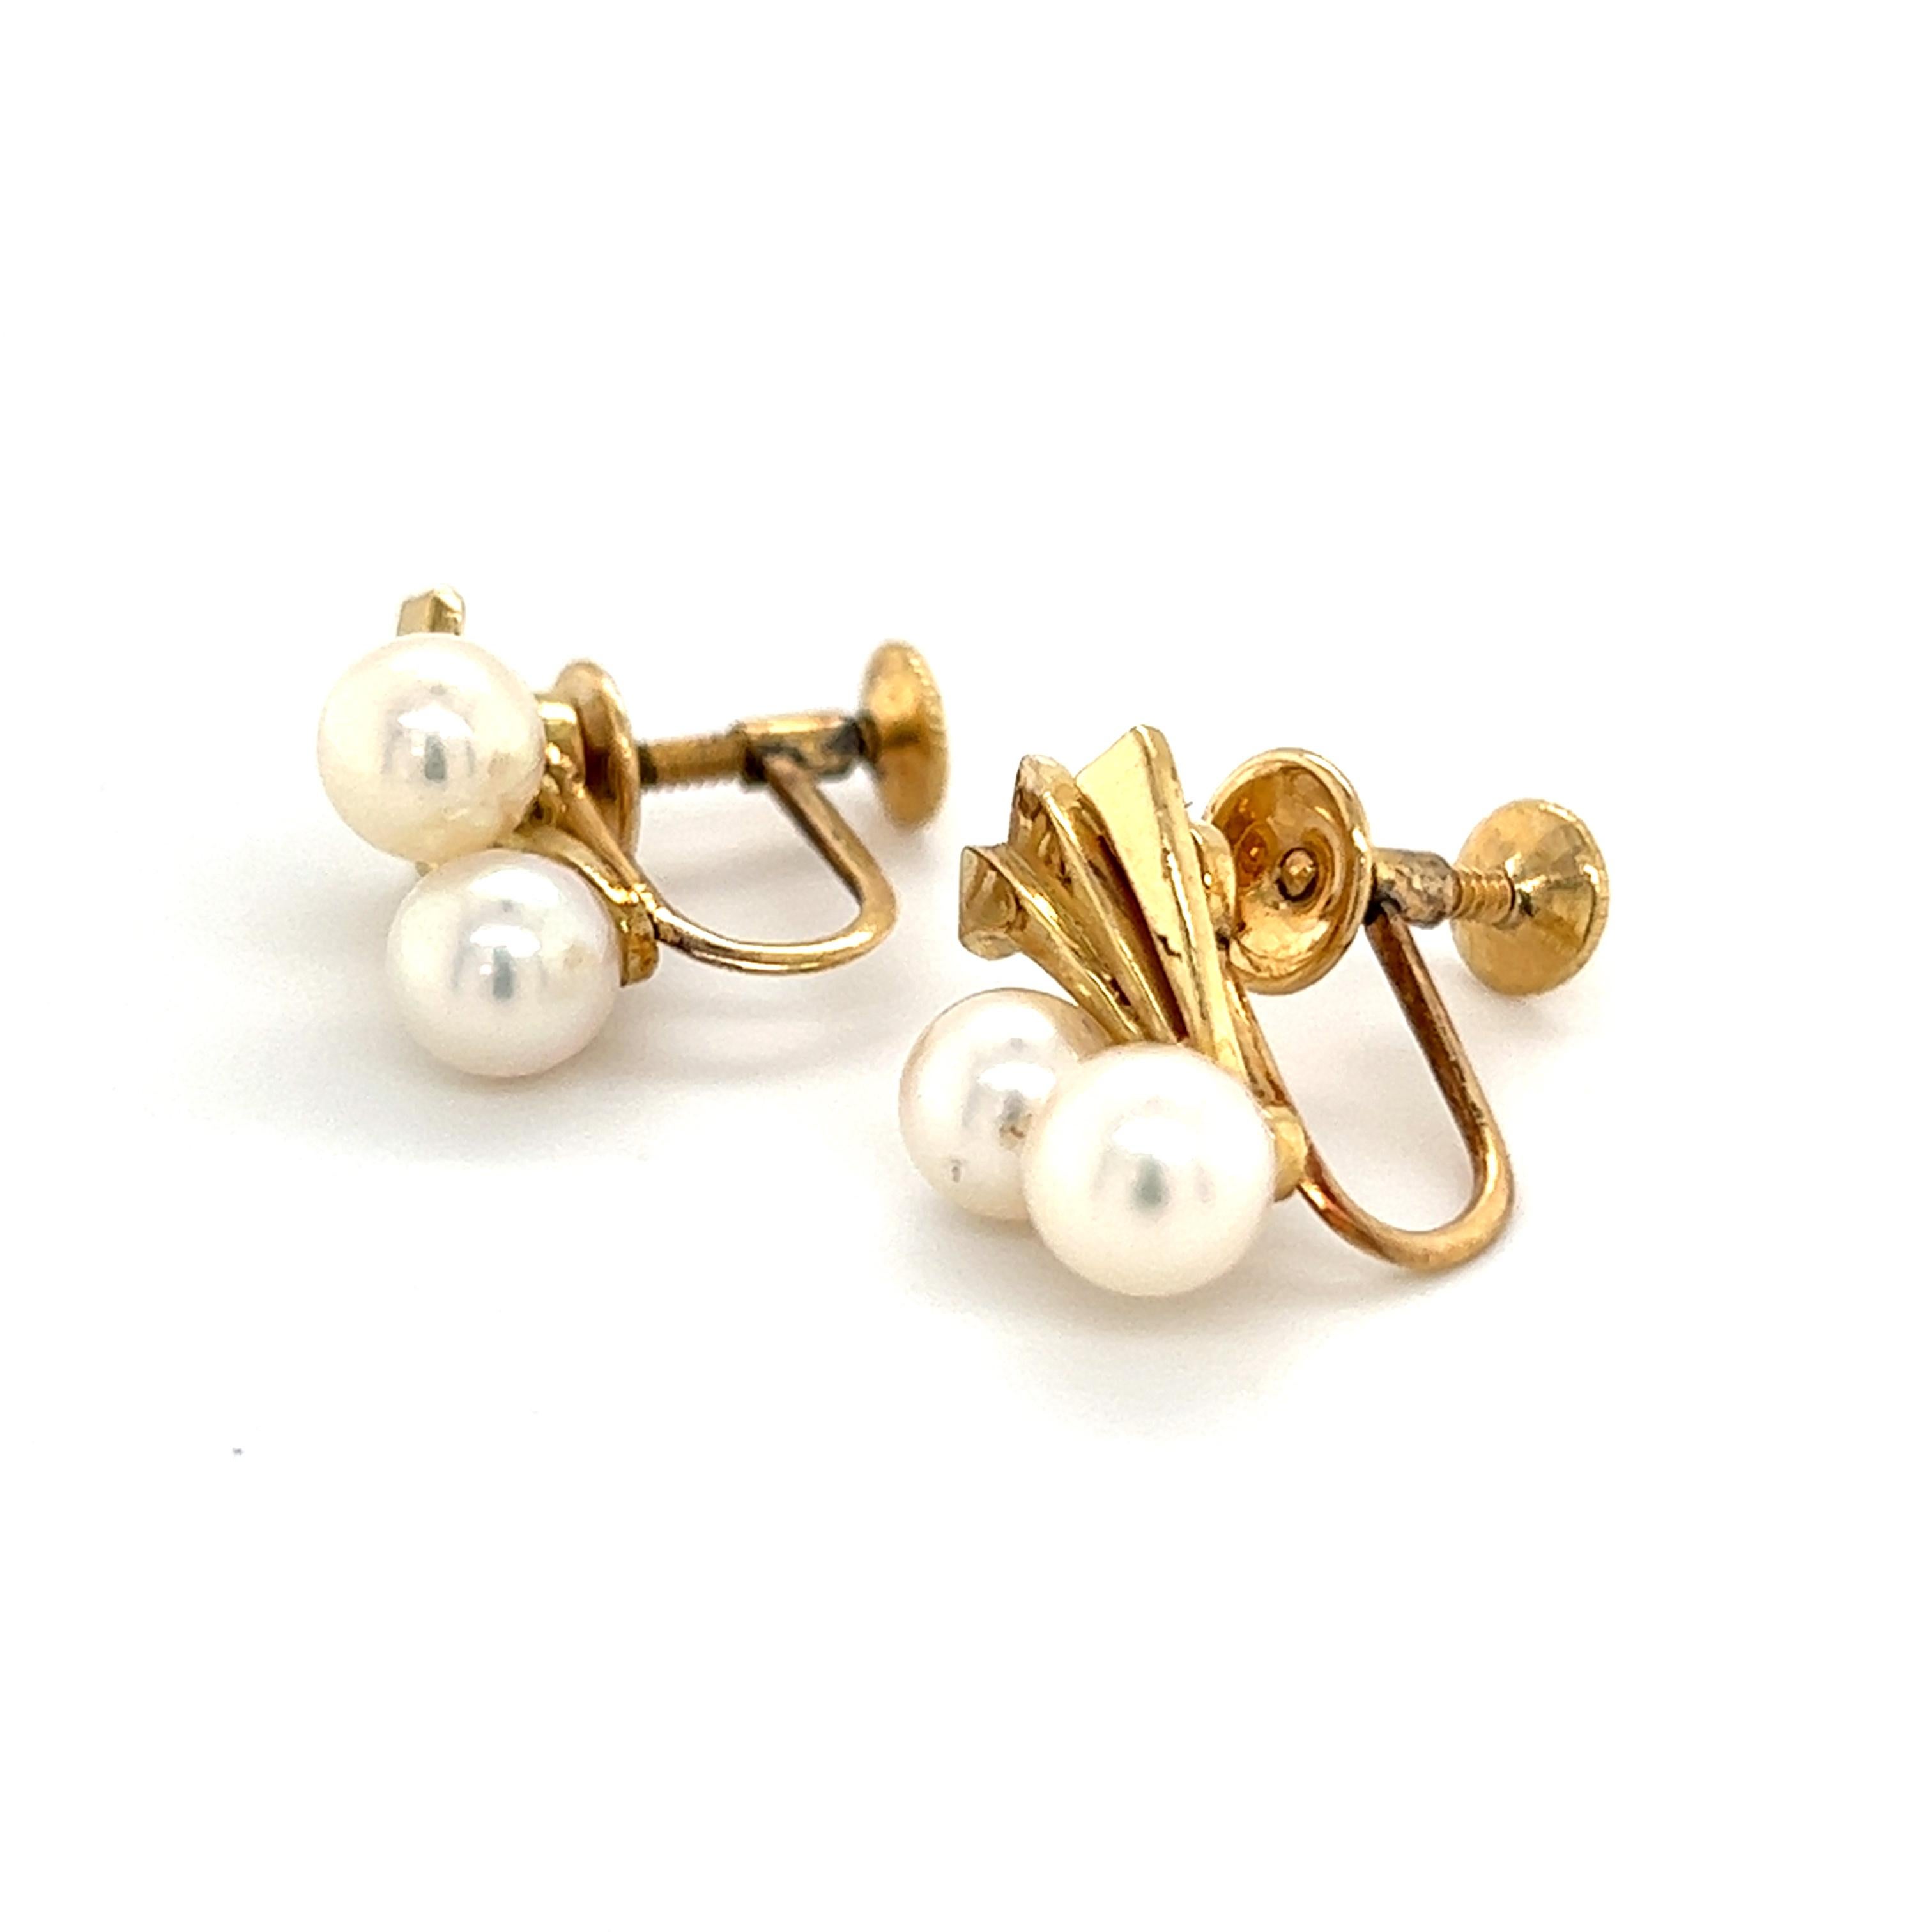 Boucles d'oreilles en or 14k avec perles d'Akoya Mikimoto 5.70 mm 4.5 Grammes M252

Ces élégantes boucles d'oreilles en perles Akoya authentiques du Domaine Mikimoto sont fabriquées en or jaune 14 carats et comportent 4 perles de culture Akoya d'une